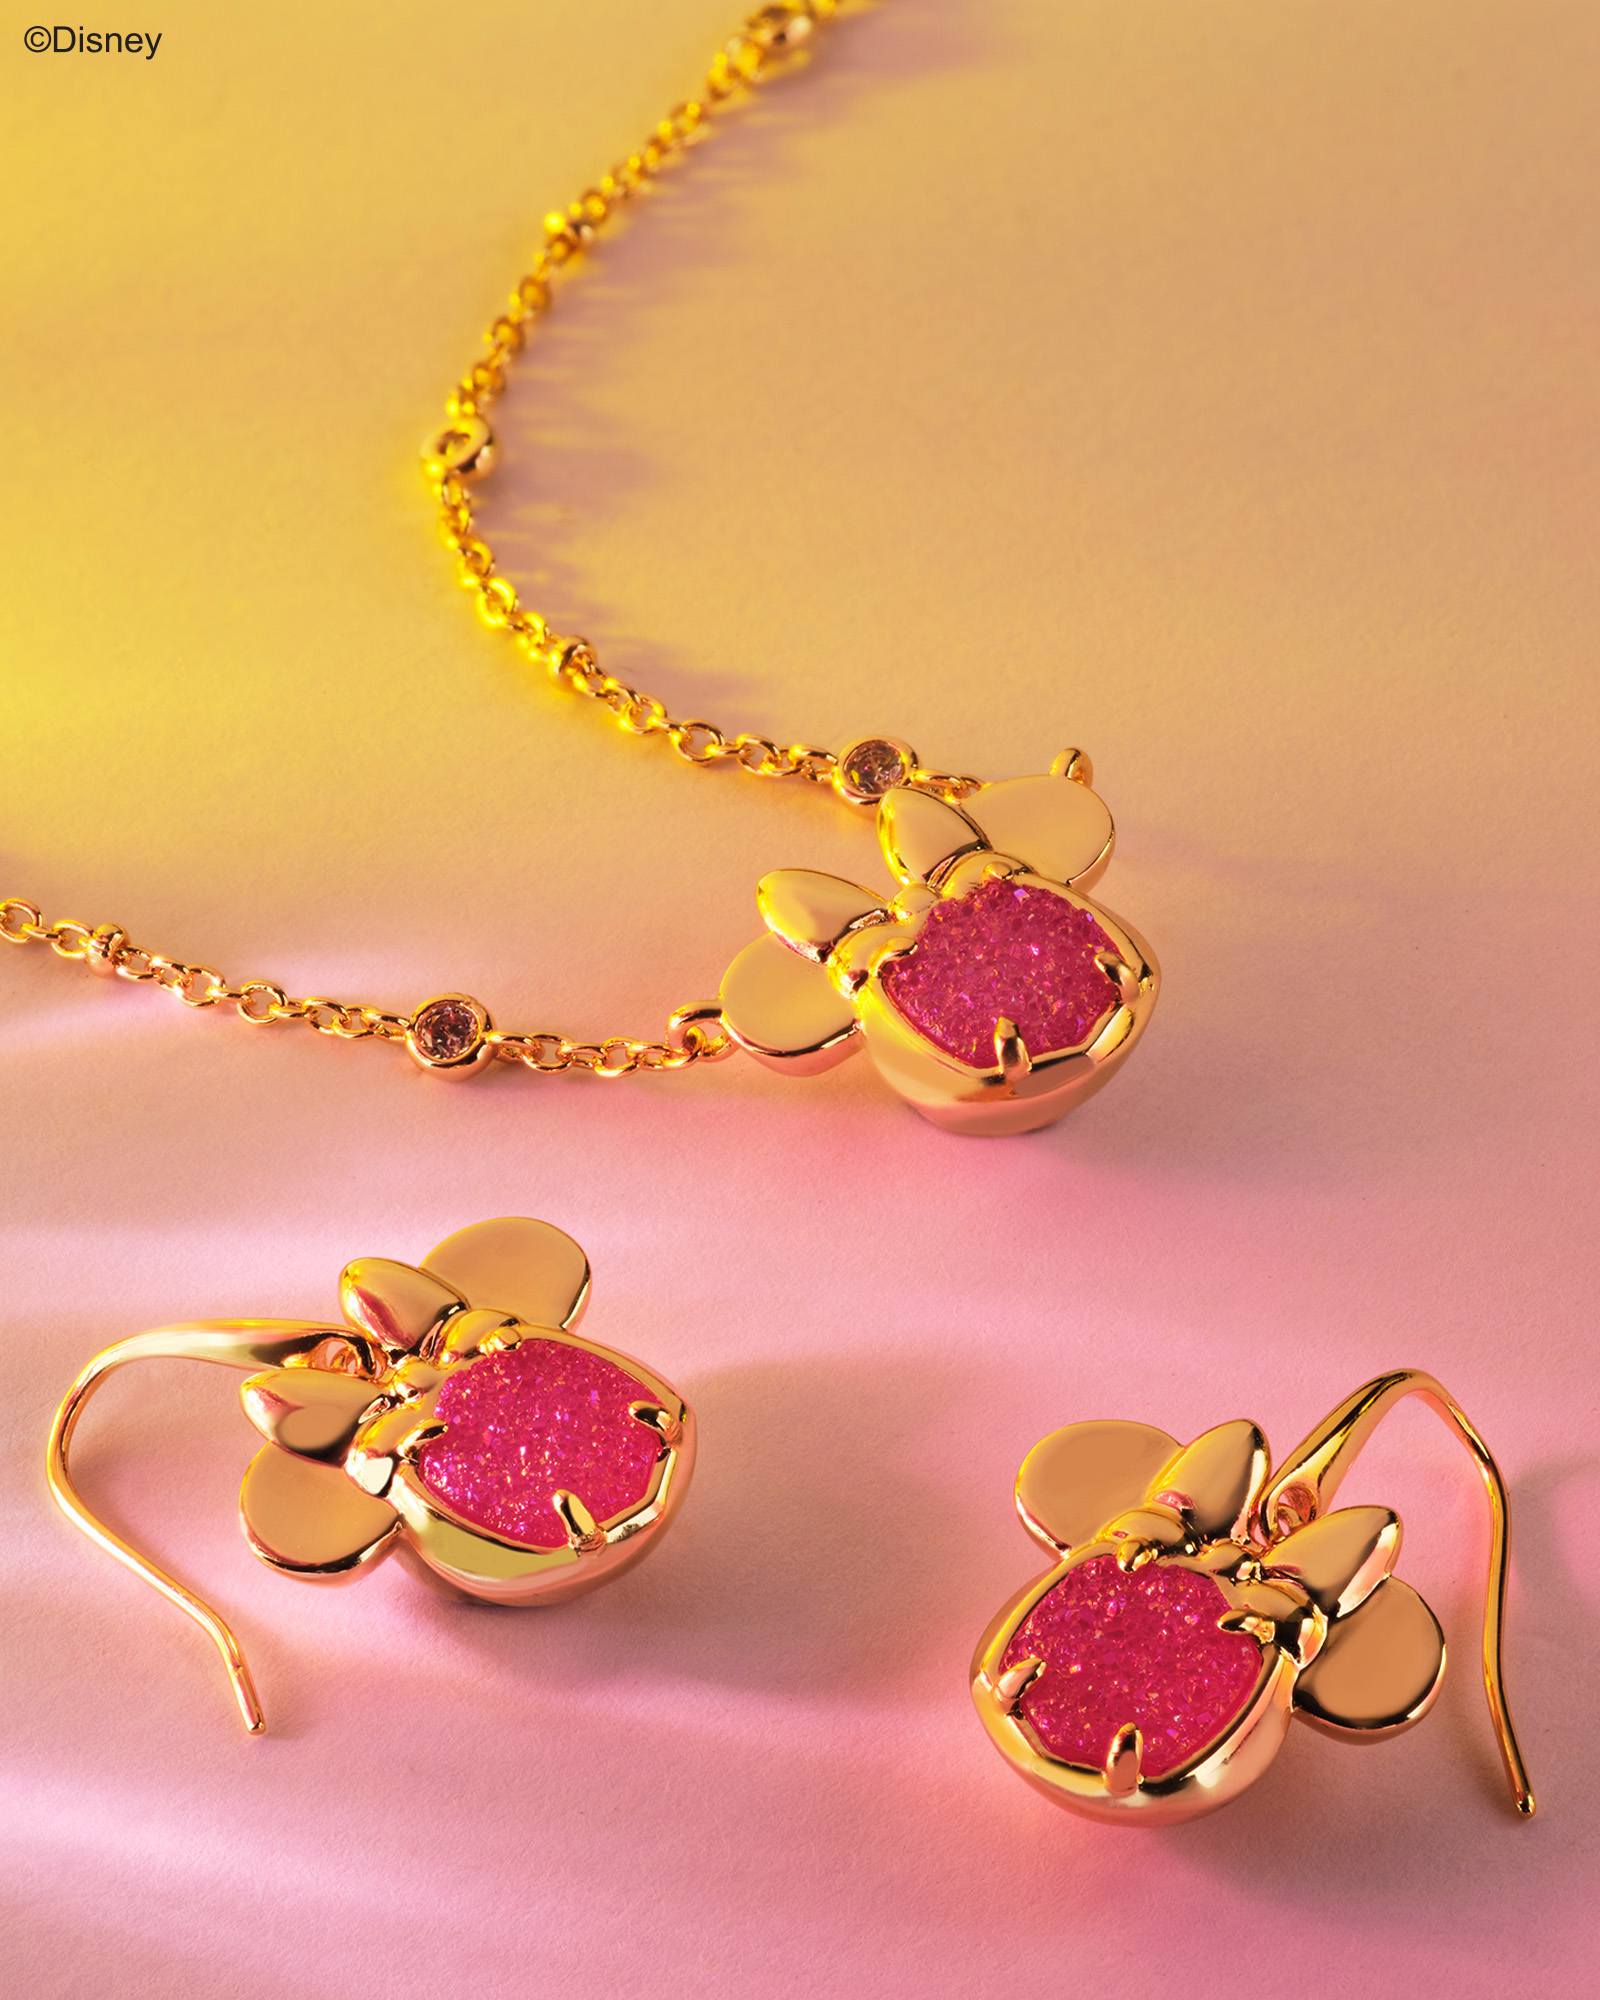 Disney | Kendra Scott Gold Minnie Mouse Drop Earrings in Hot Pink Drusy